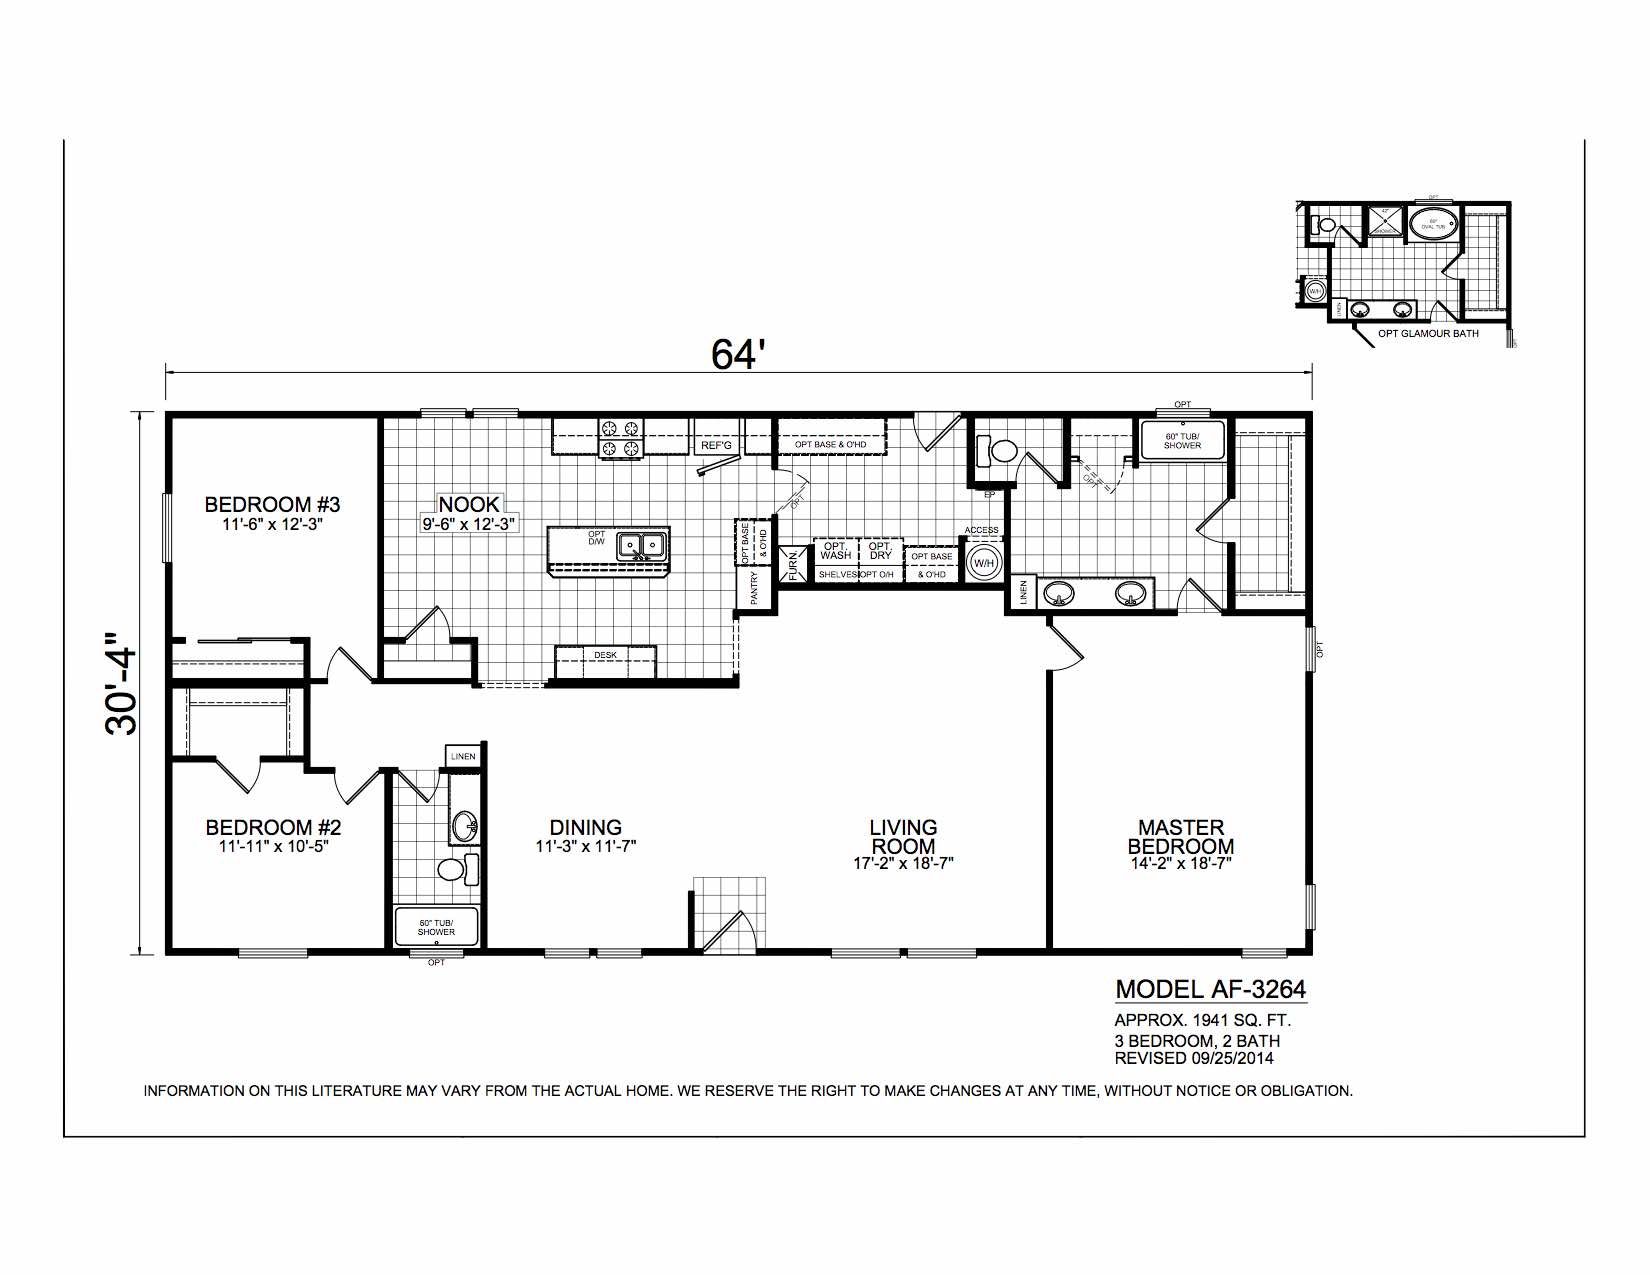 Homes Direct Modular Homes - Model AF3264 - Floorplan